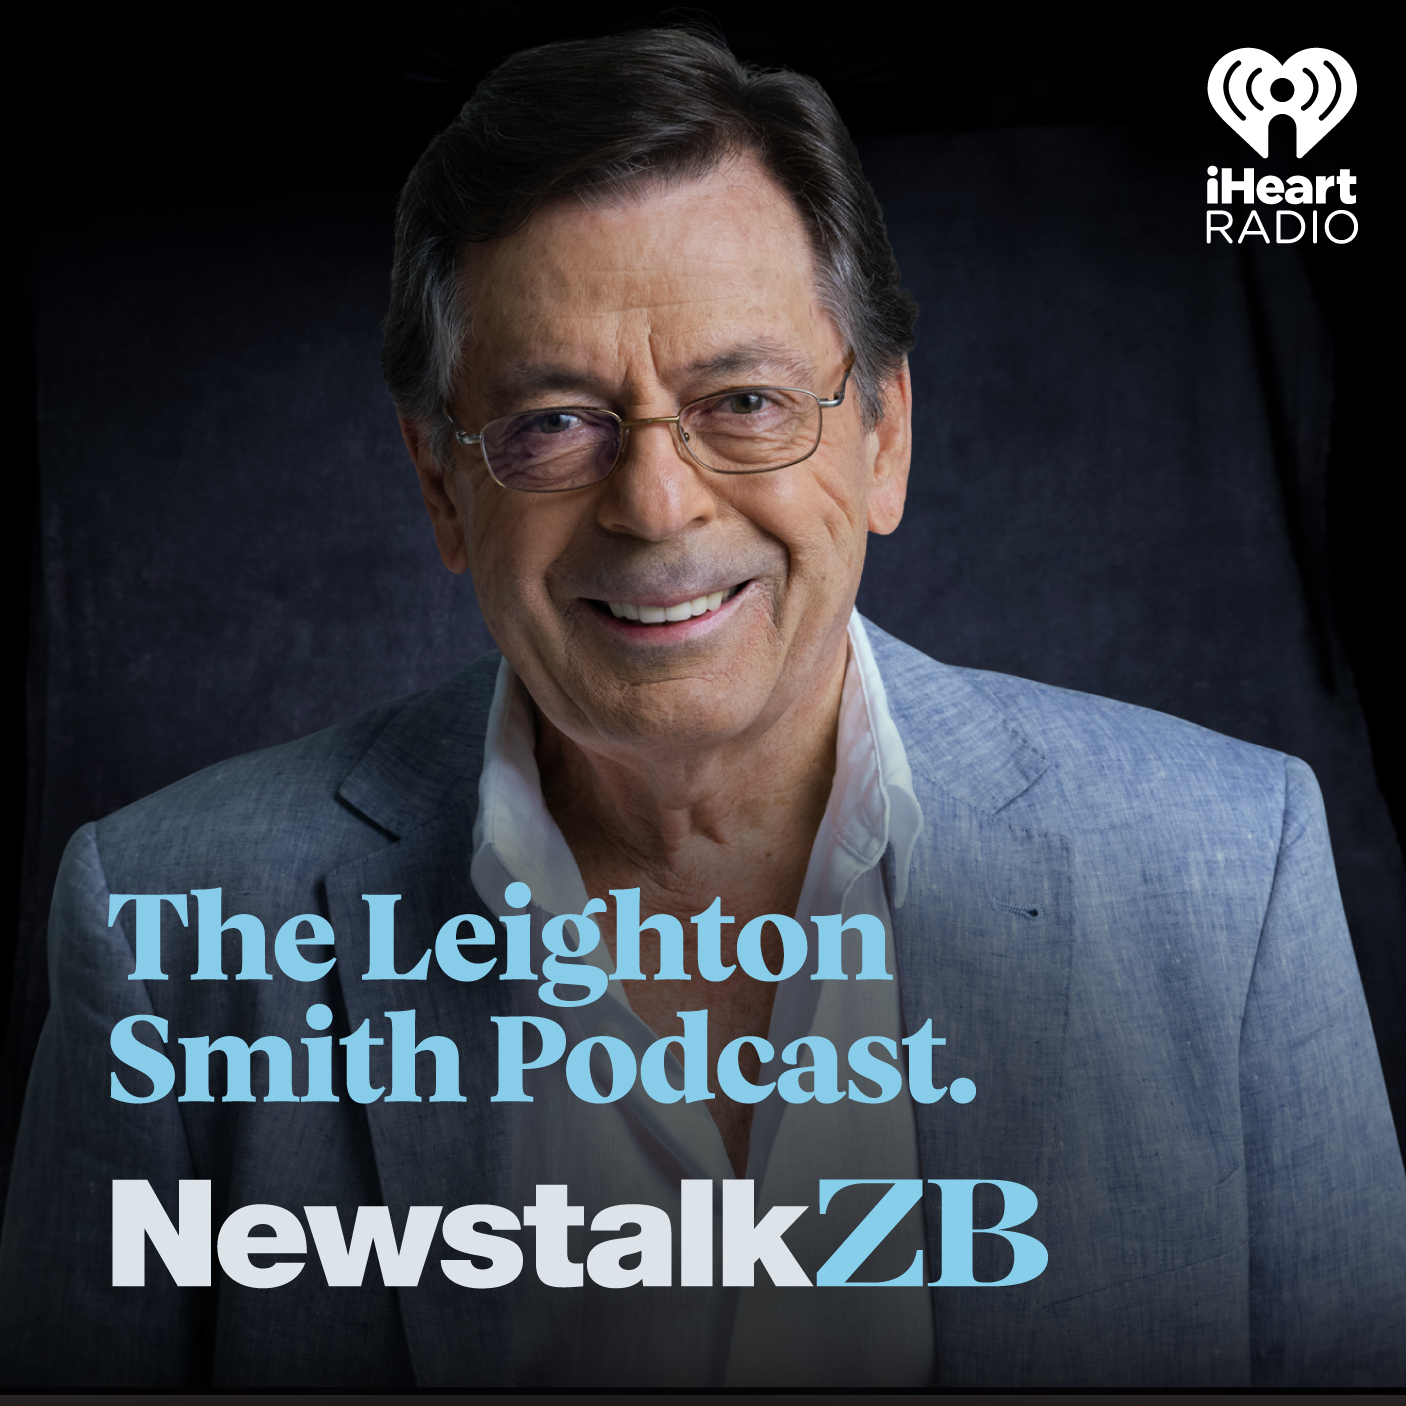 Leighton Smith Podcast Episode 182 - November 23rd 2022